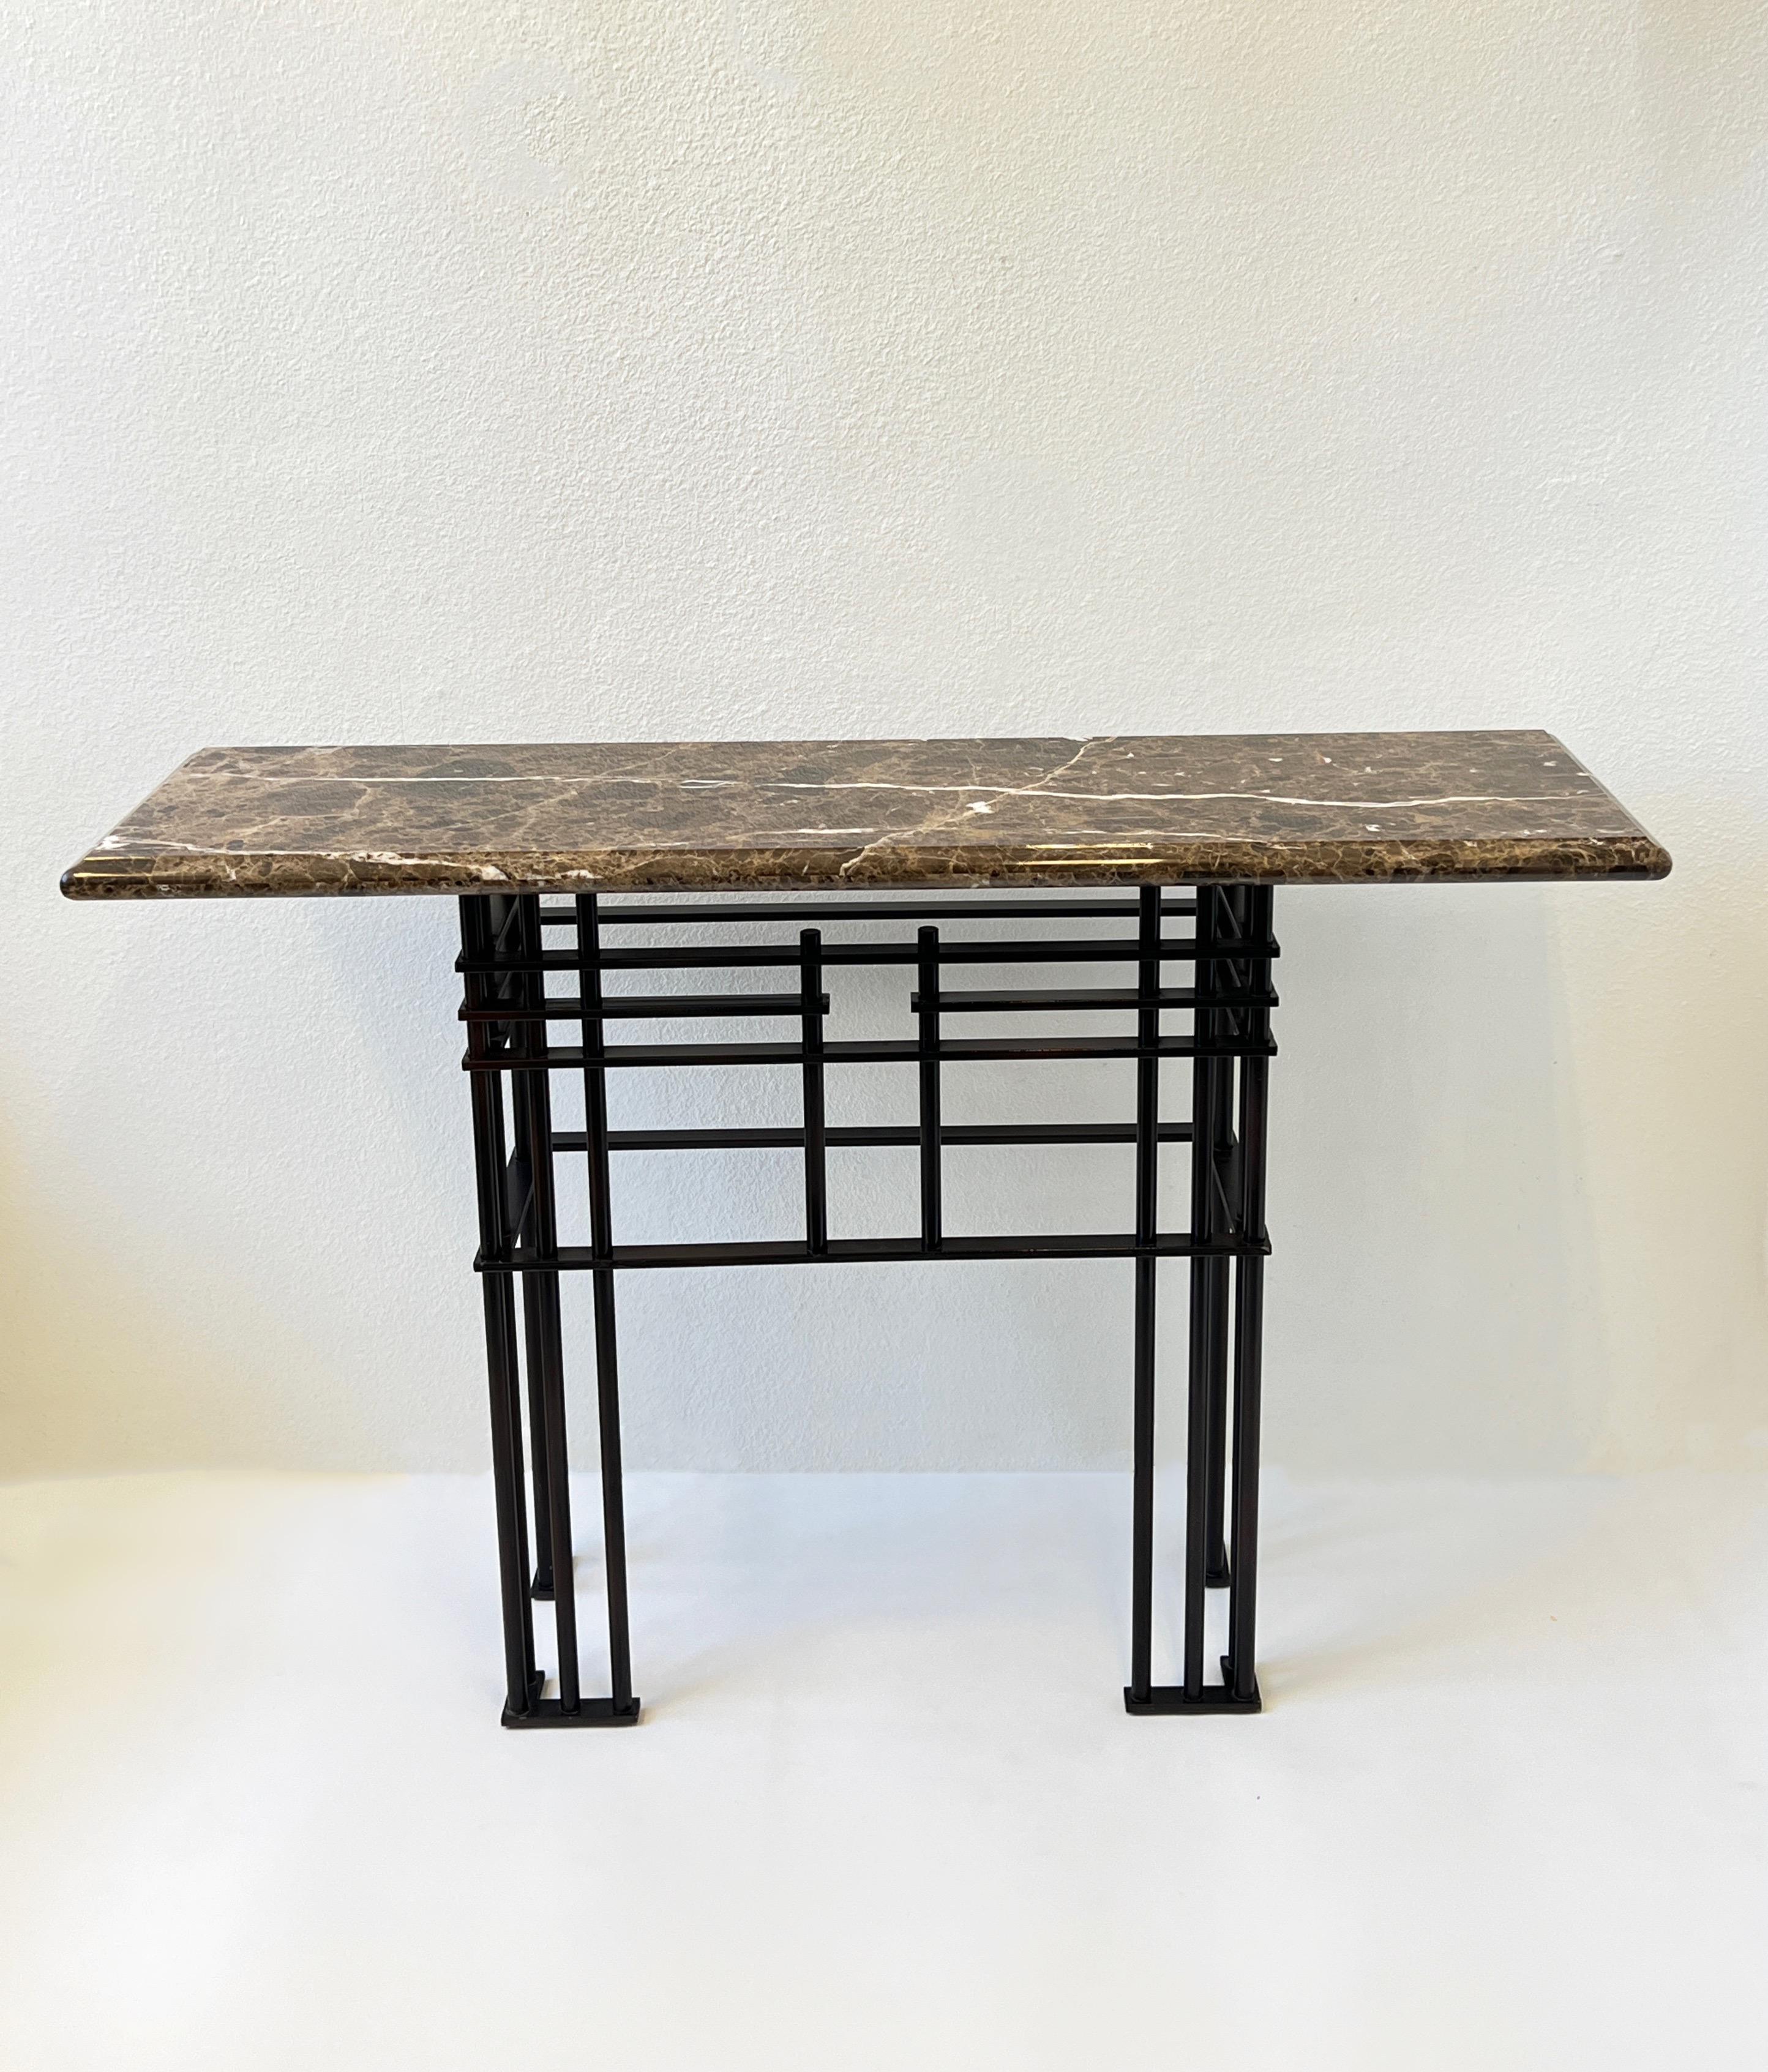 table console des années 1980 conçue par l'architecte français Jean Michele Wilmotte pour Mirak. 
Le plateau est en marbre de couleur marron et la base en acier à revêtement en poudre de couleur bronze. 
Mesures : 55